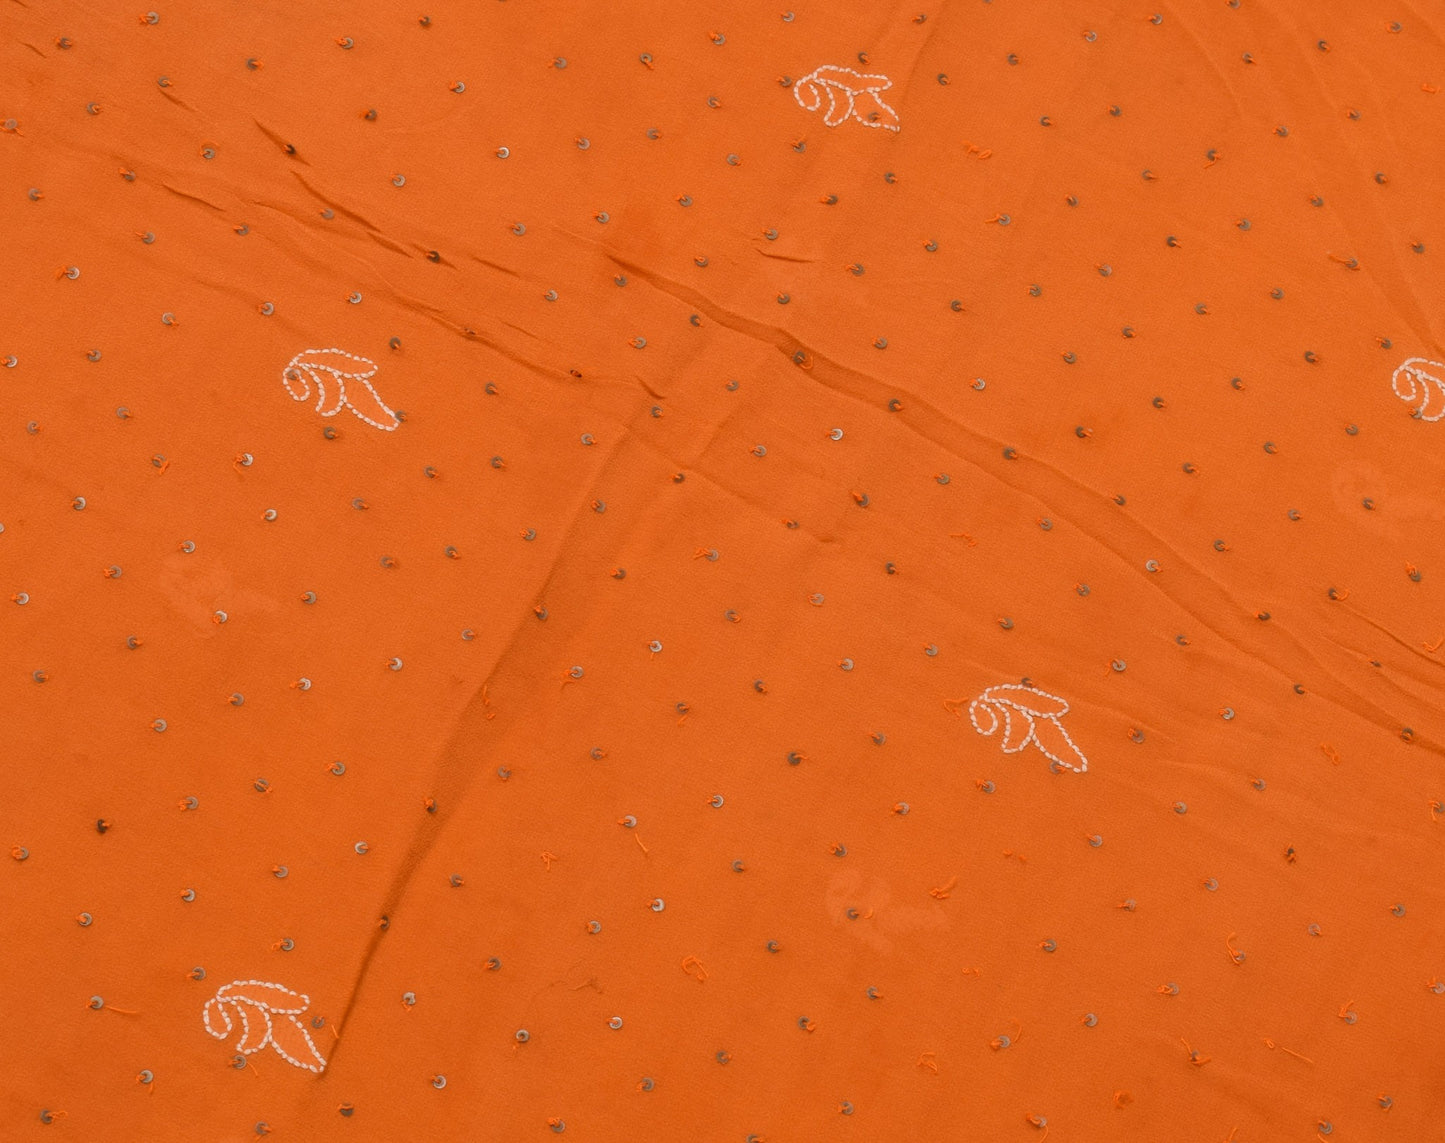 Sushila Vintage Orange Sari Remnant Scrap Multi Purpose Georgette Craft Fabric